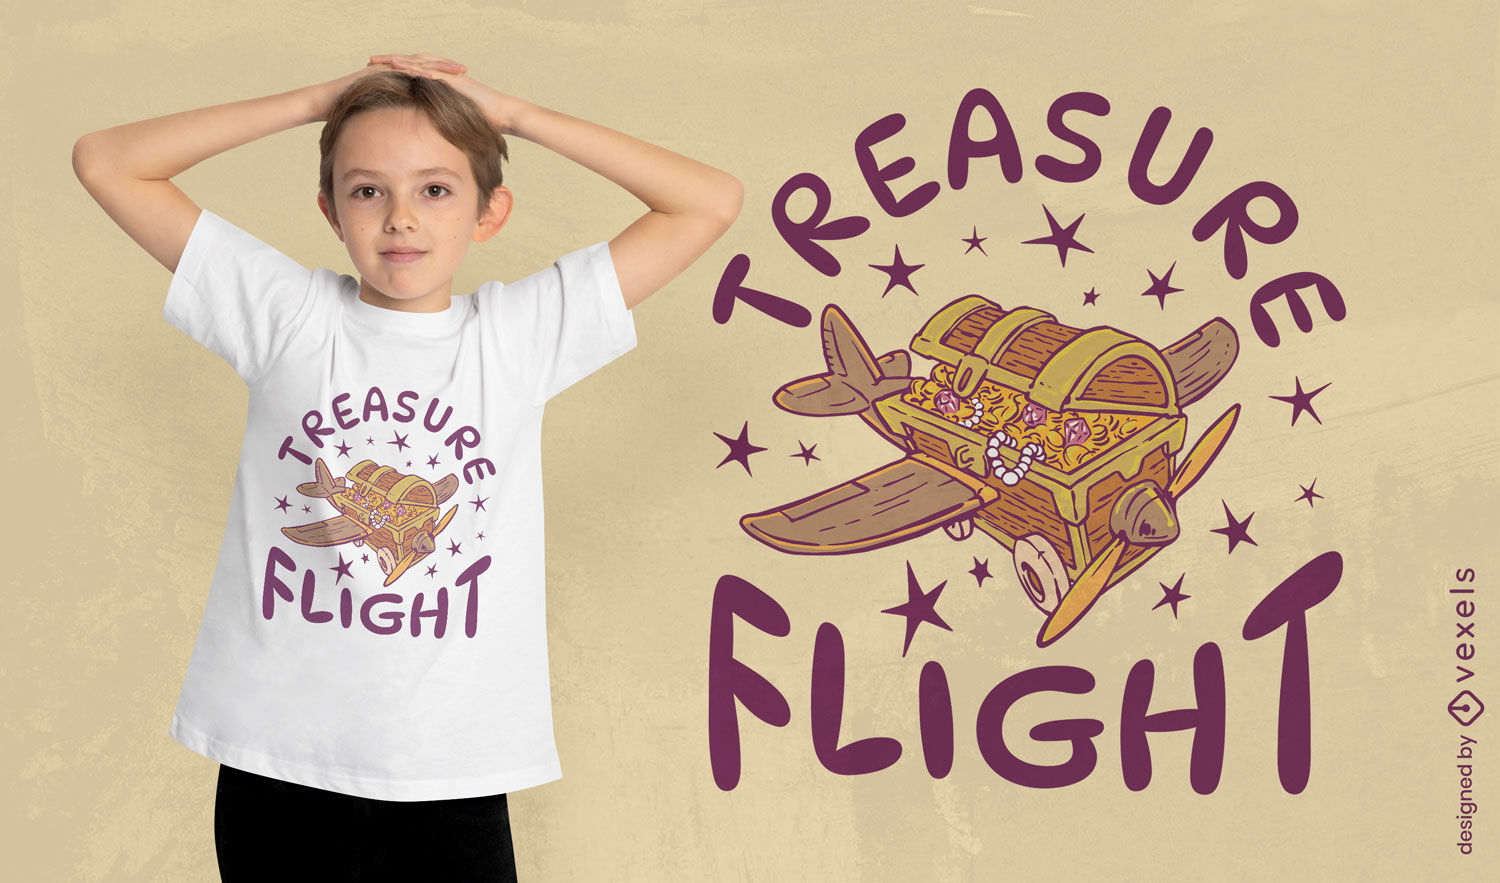 Treasure chest plane t-shirt design